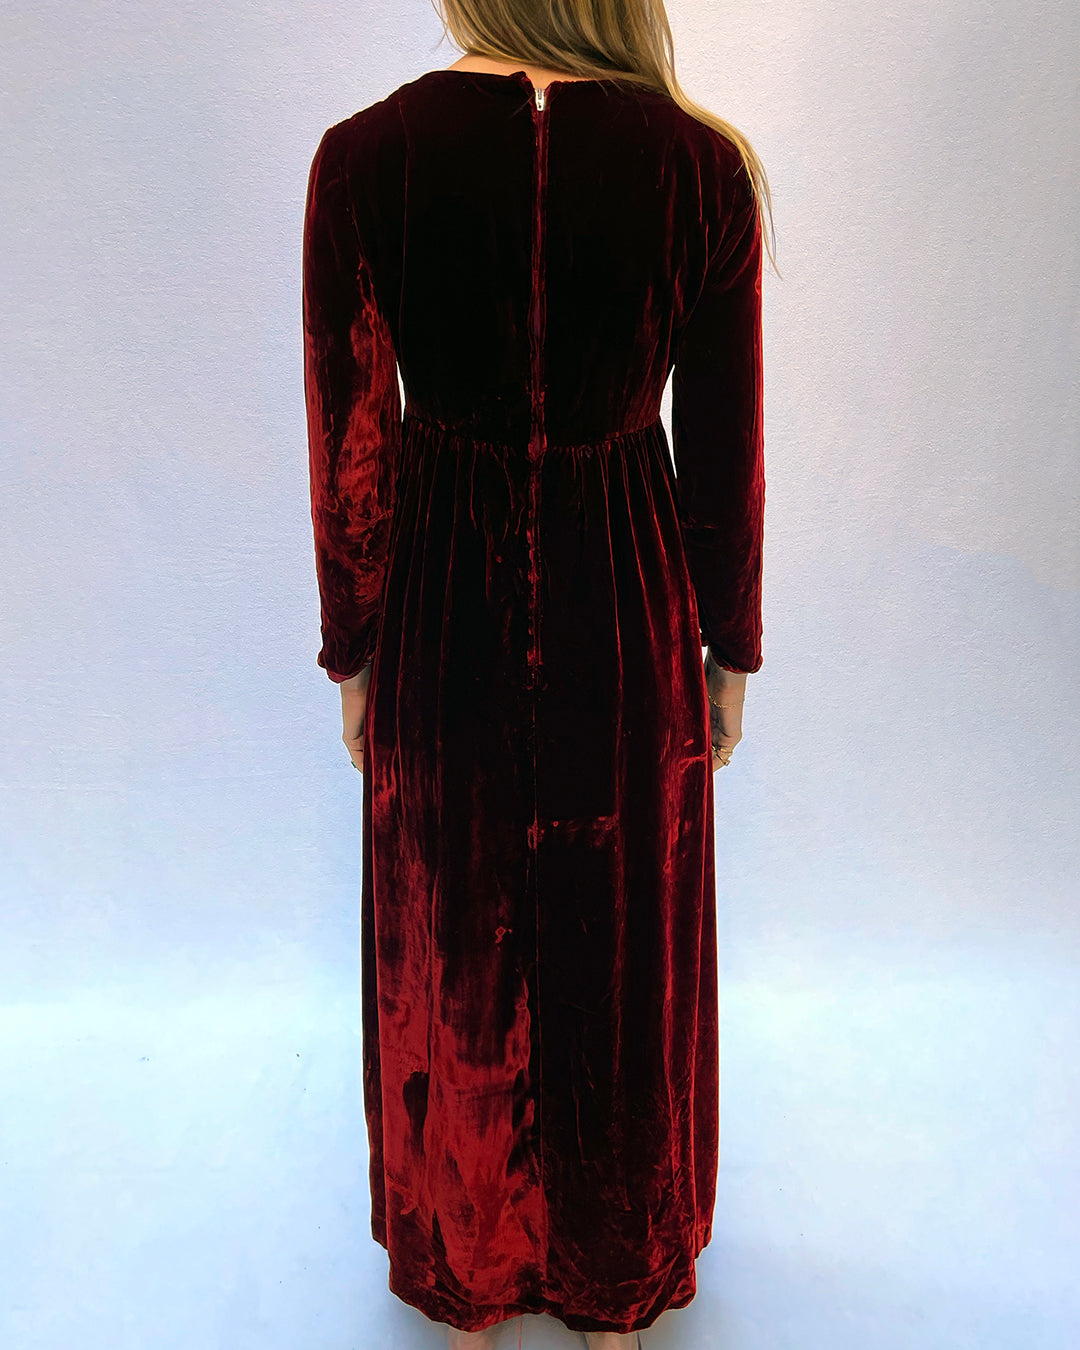 VINTAGE 1930s LONG SLEEVE RED VELVET DRESS